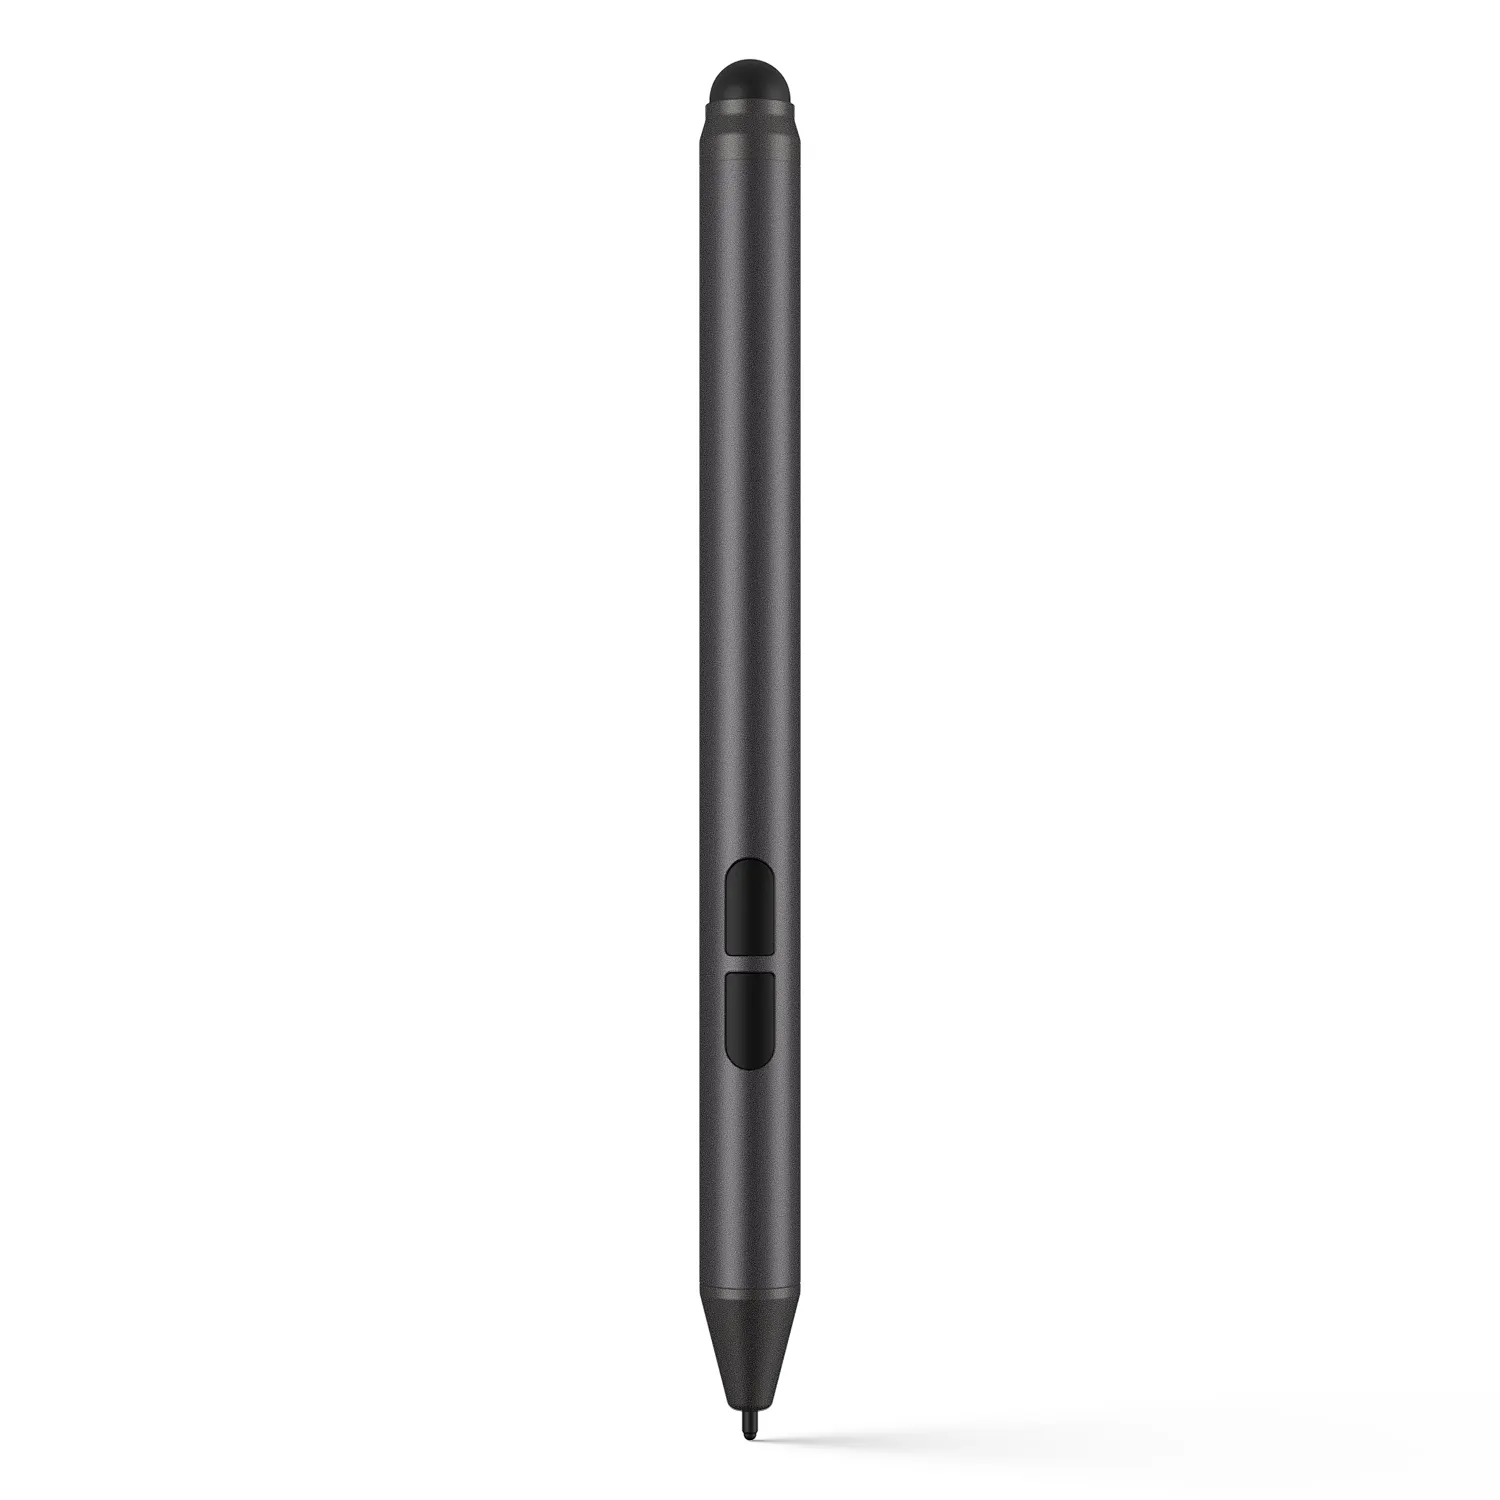 Çin Oem kapasitif Stylus kalem duyarlı yüzey kalem için HP/DELL/MICROSOFT Tablet